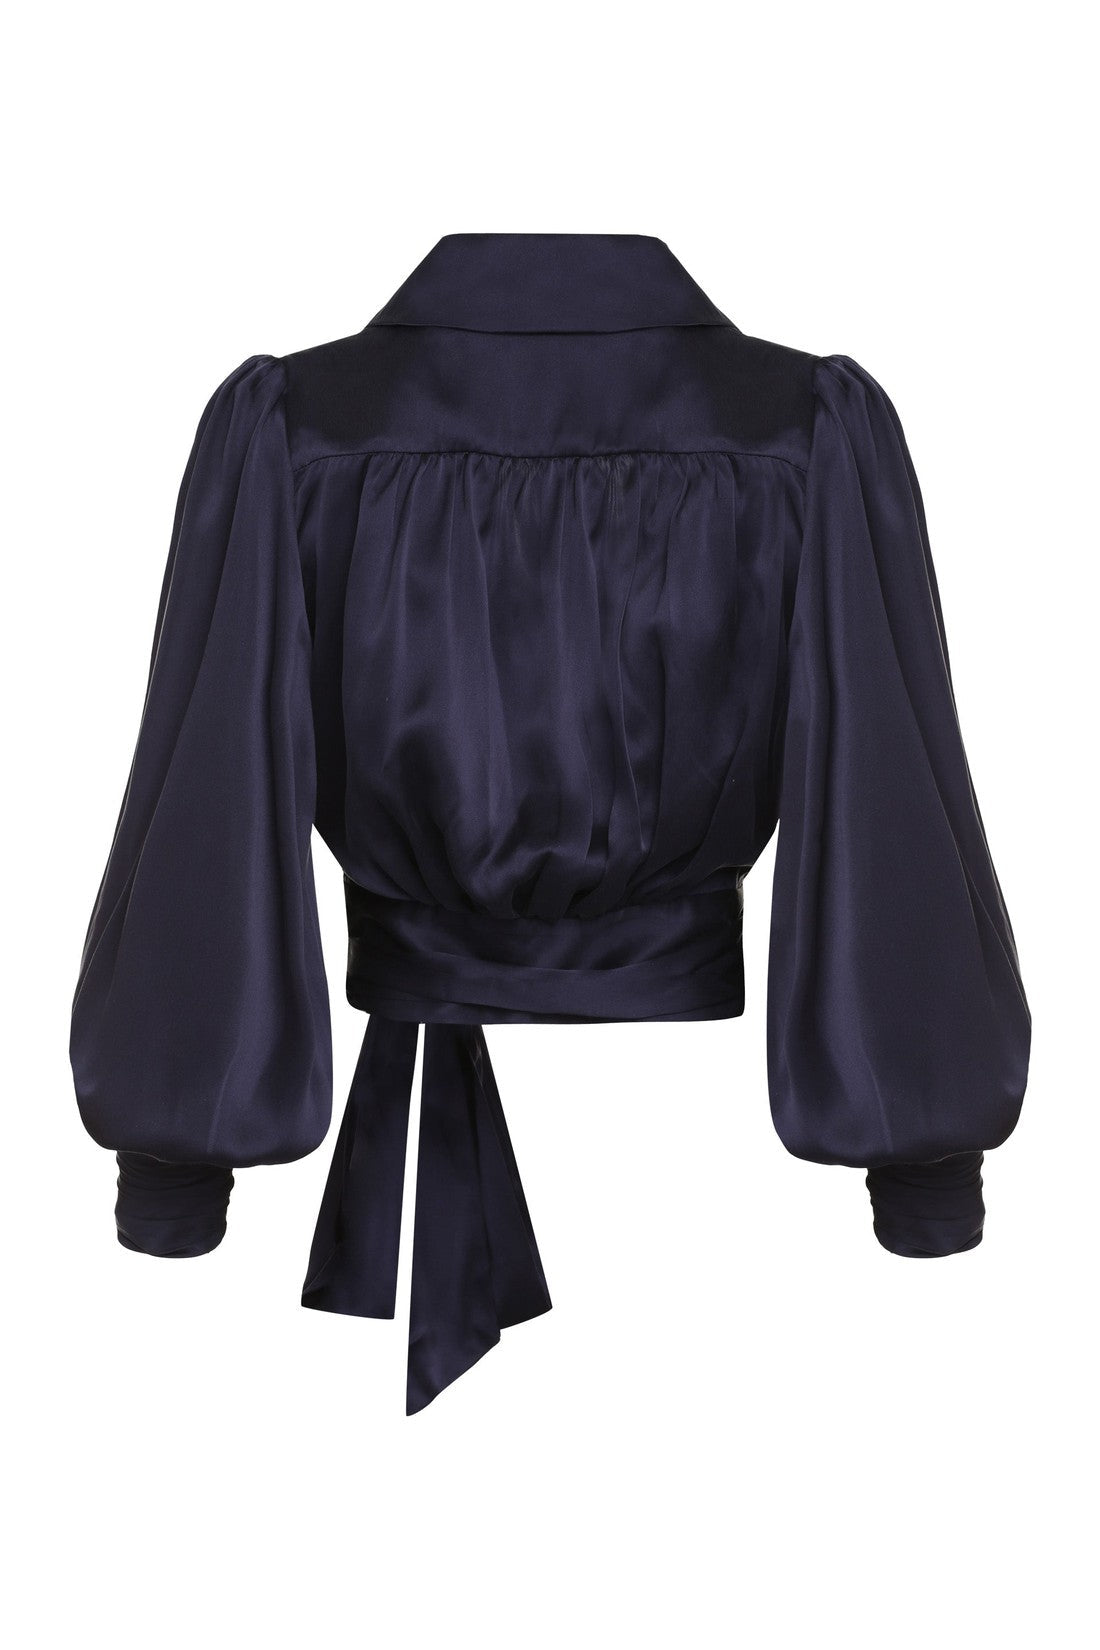 Zimmermann-OUTLET-SALE-Silk blouse-ARCHIVIST